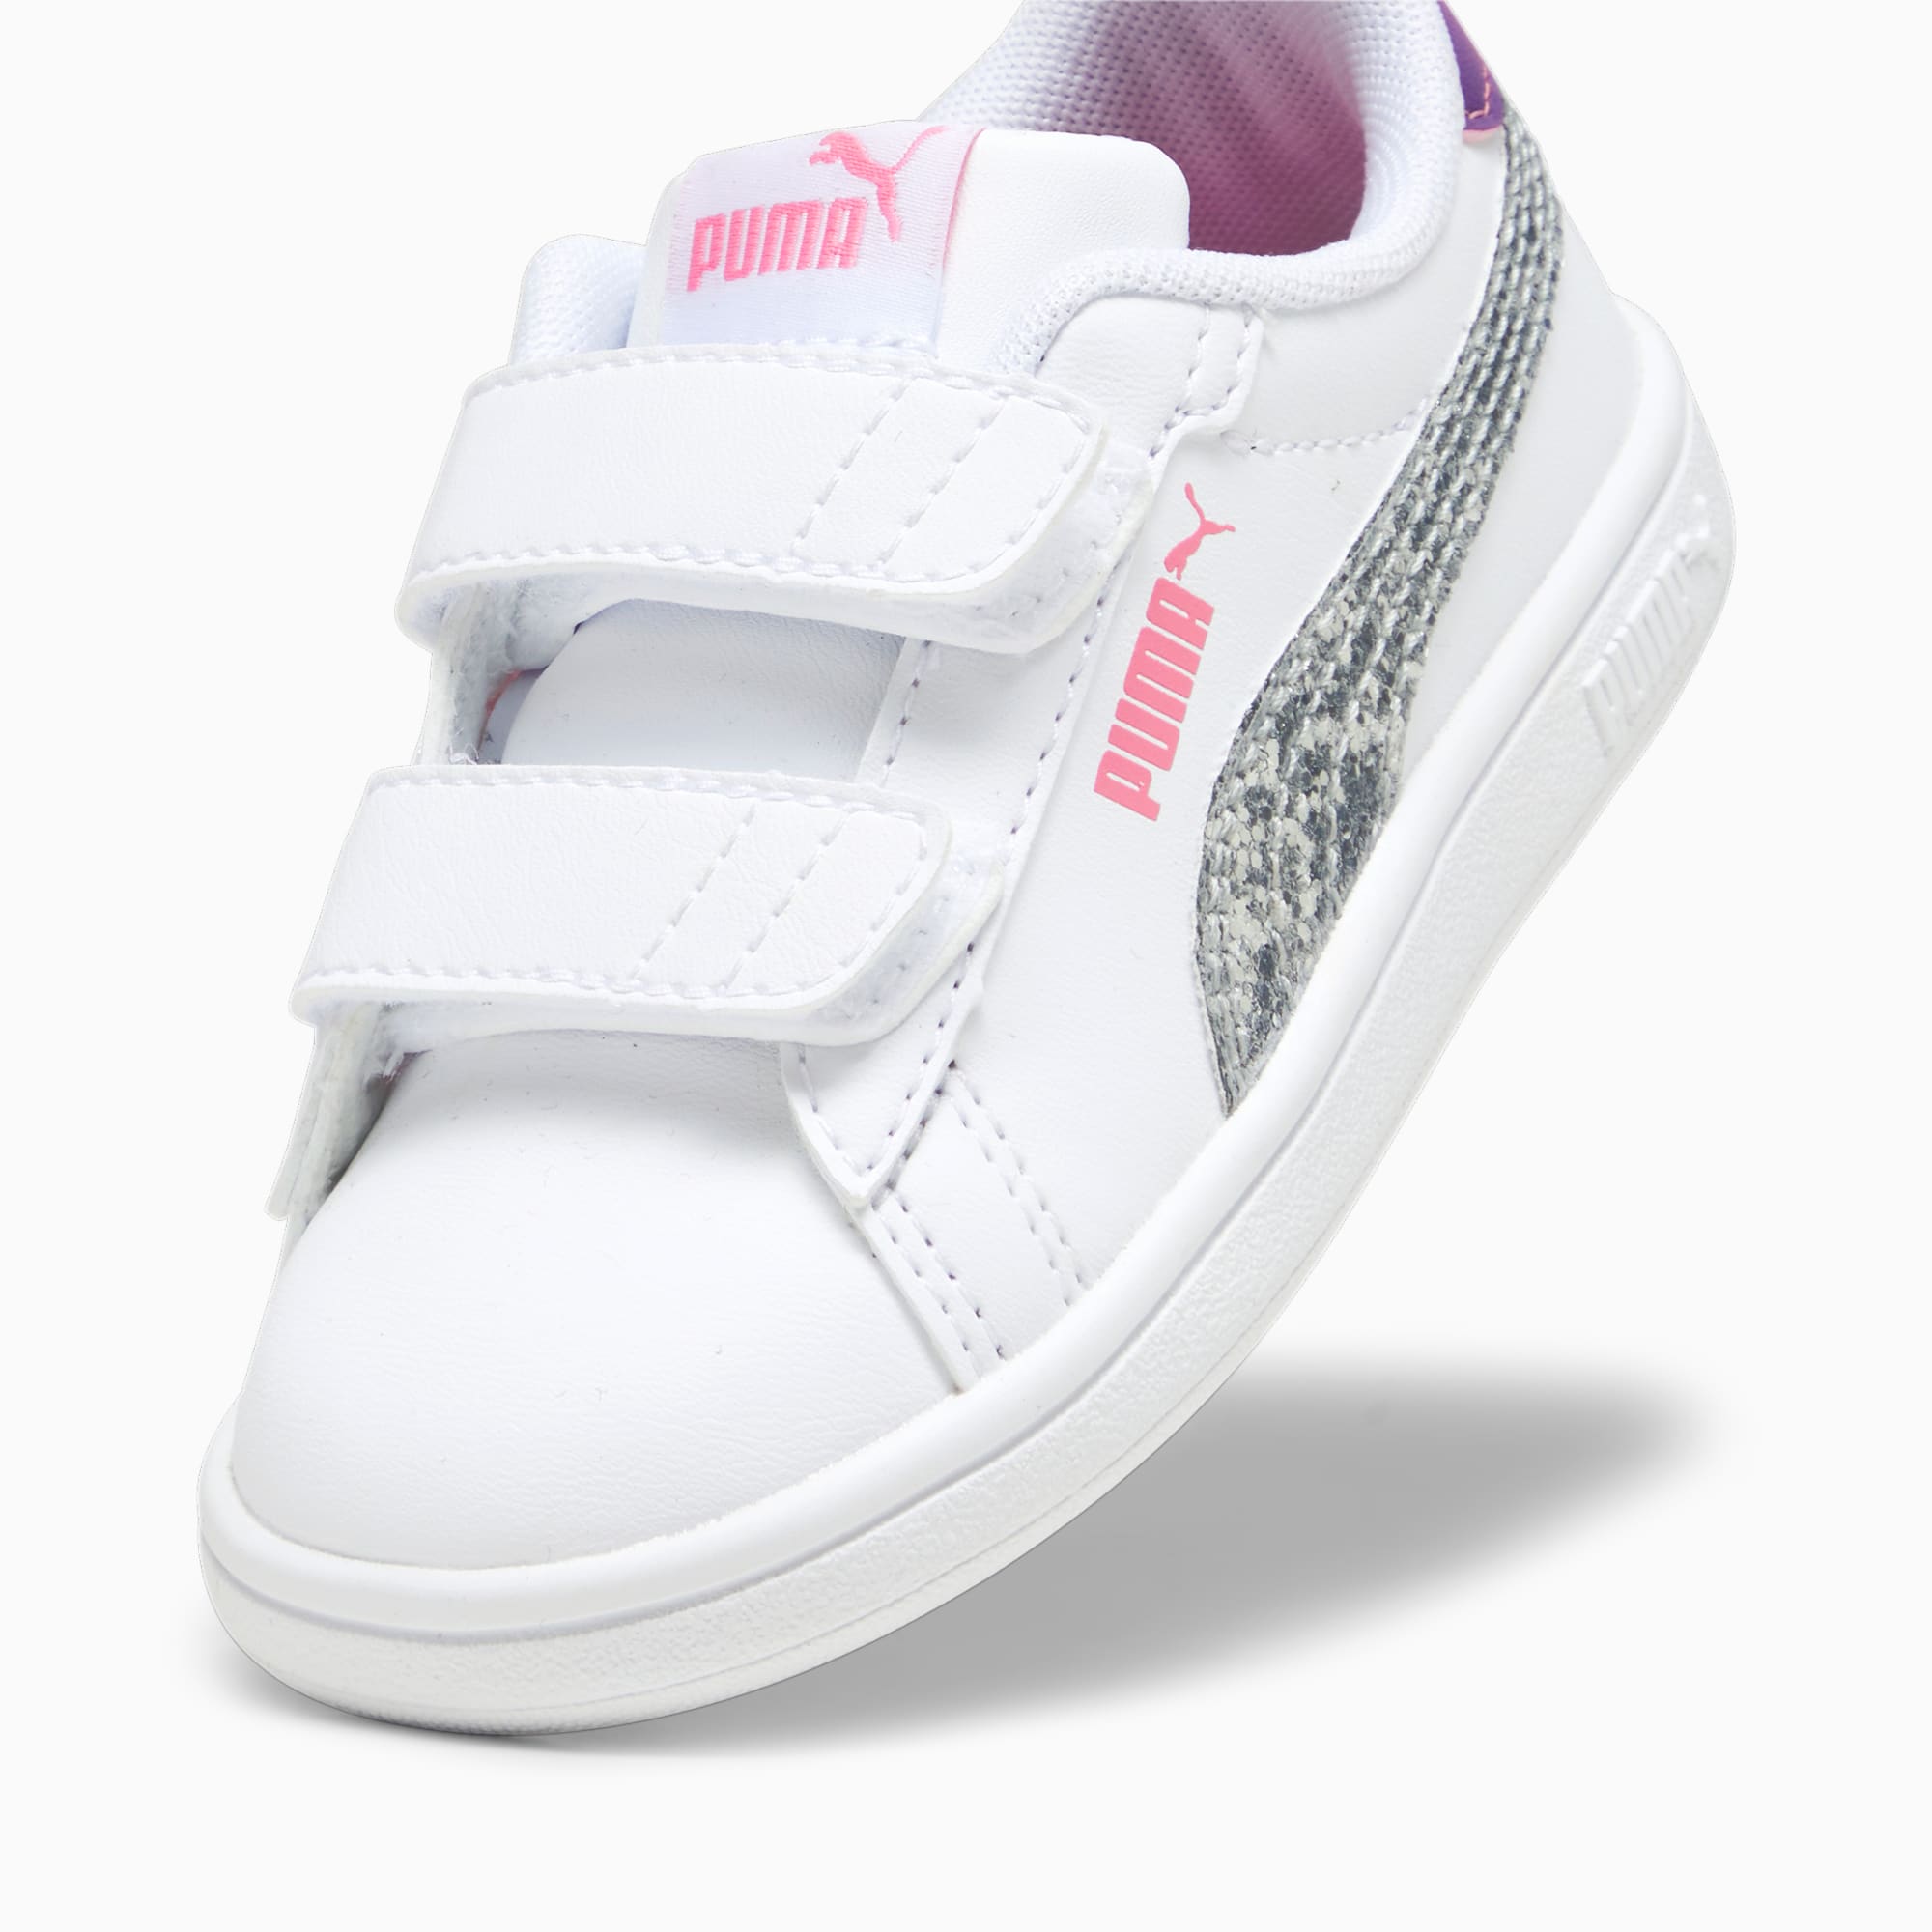 Scarpe Sneaker PUMA Smash 3.0 Star Glo Per Bimba Ai Primi Passi, Viola/Rosa/Bianco/Altro